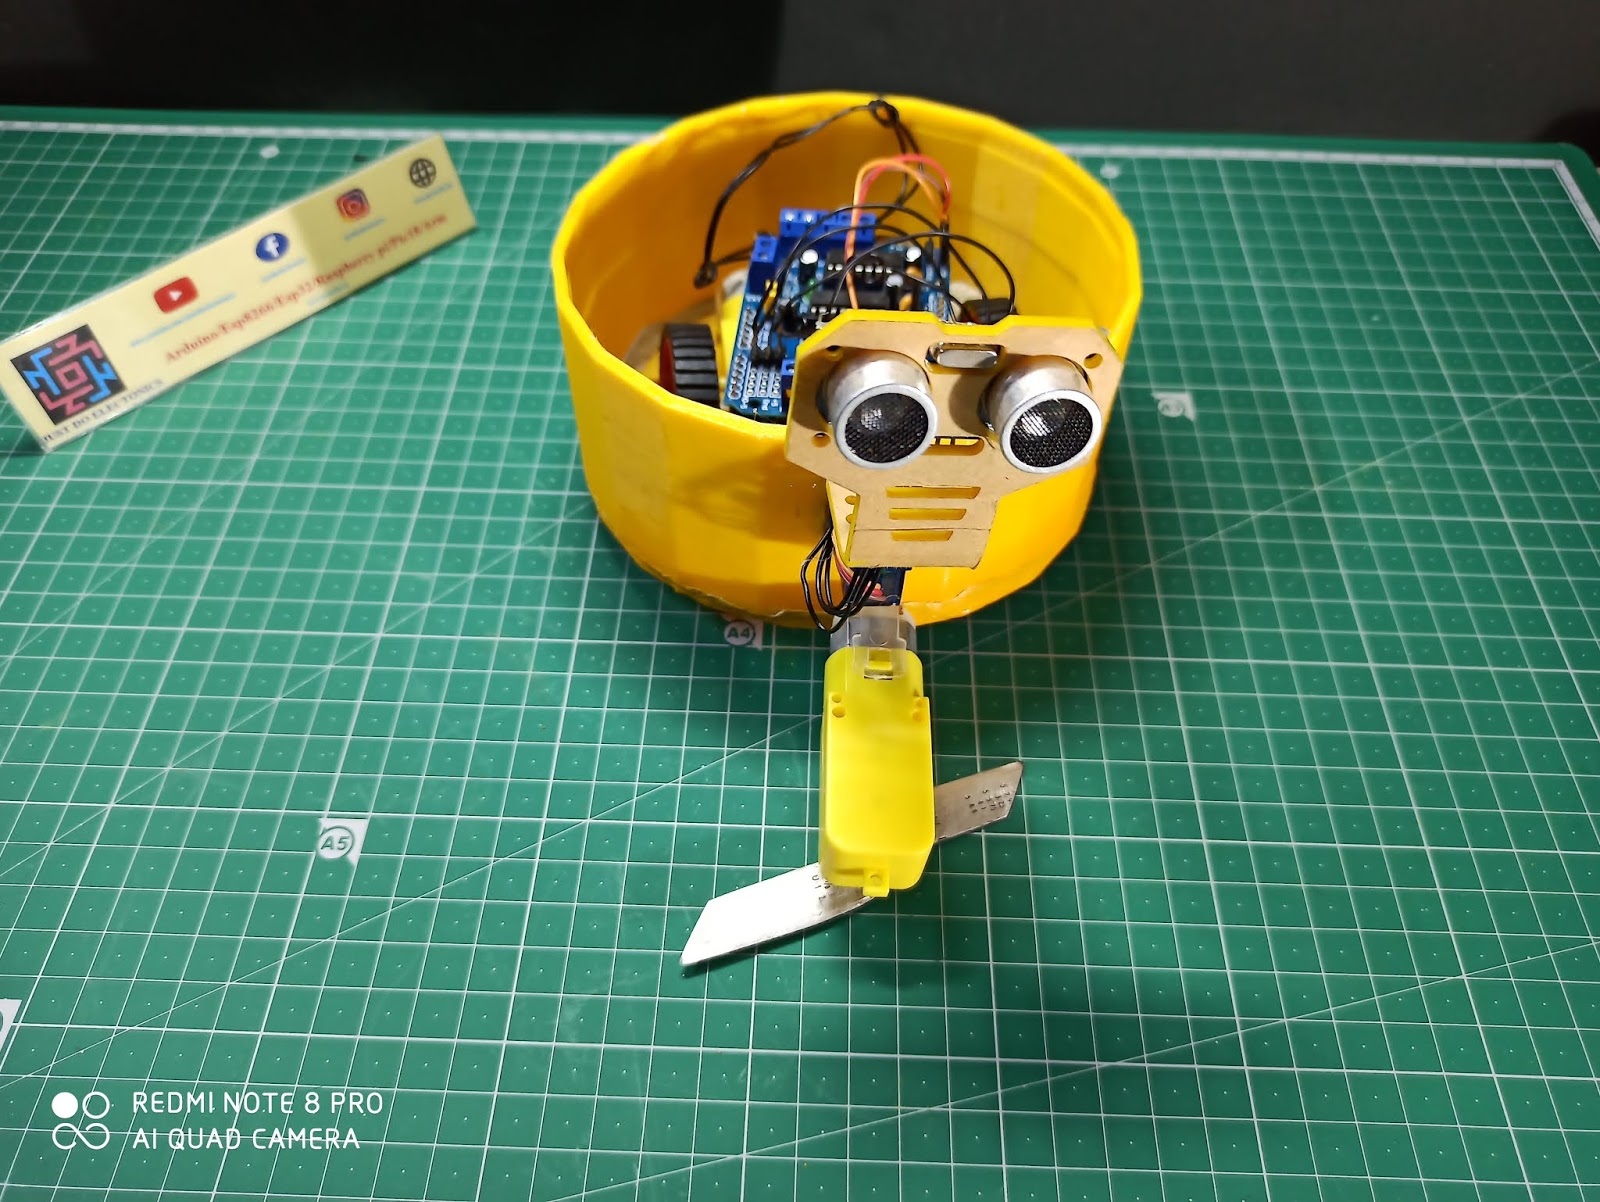 Make an Automatic Grass Cutting Robot using Arduino